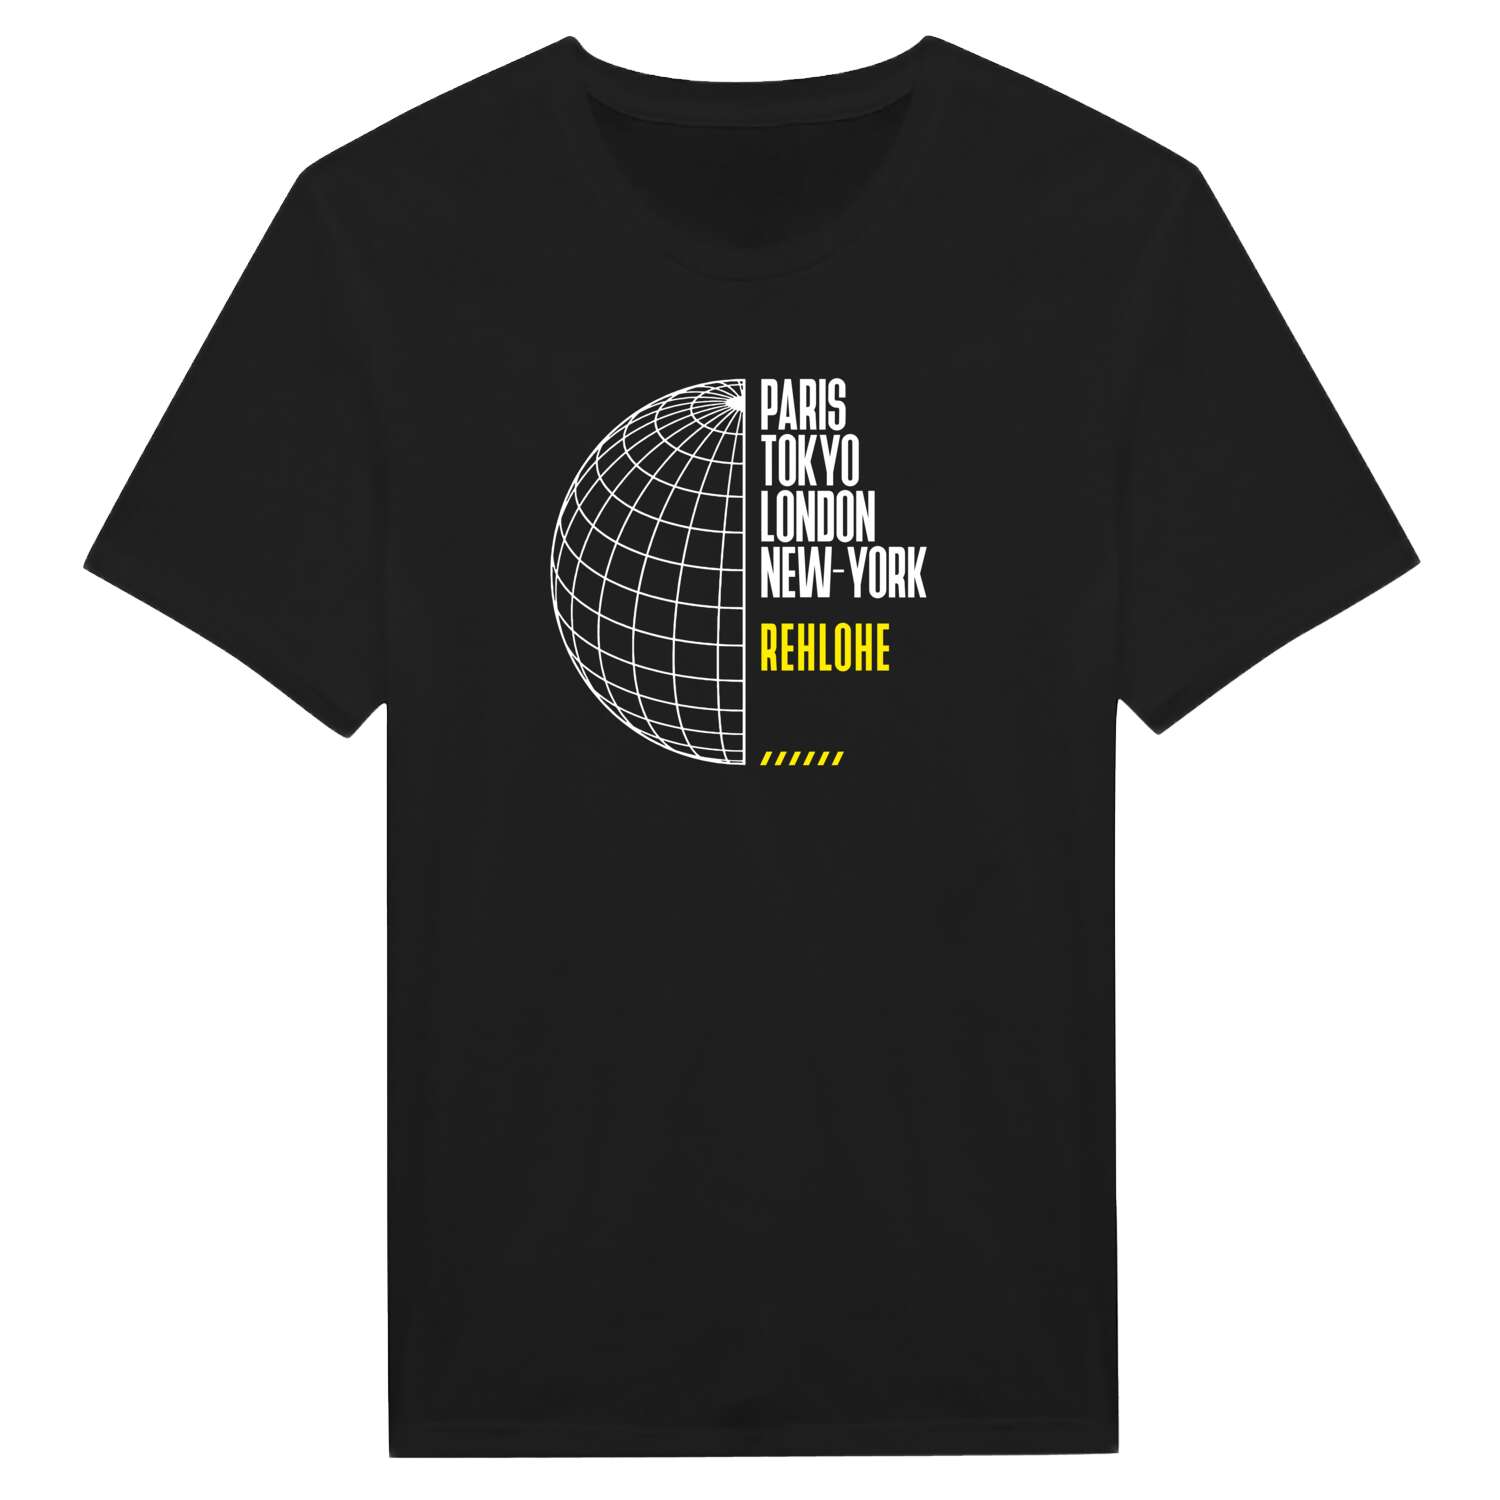 Rehlohe T-Shirt »Paris Tokyo London«